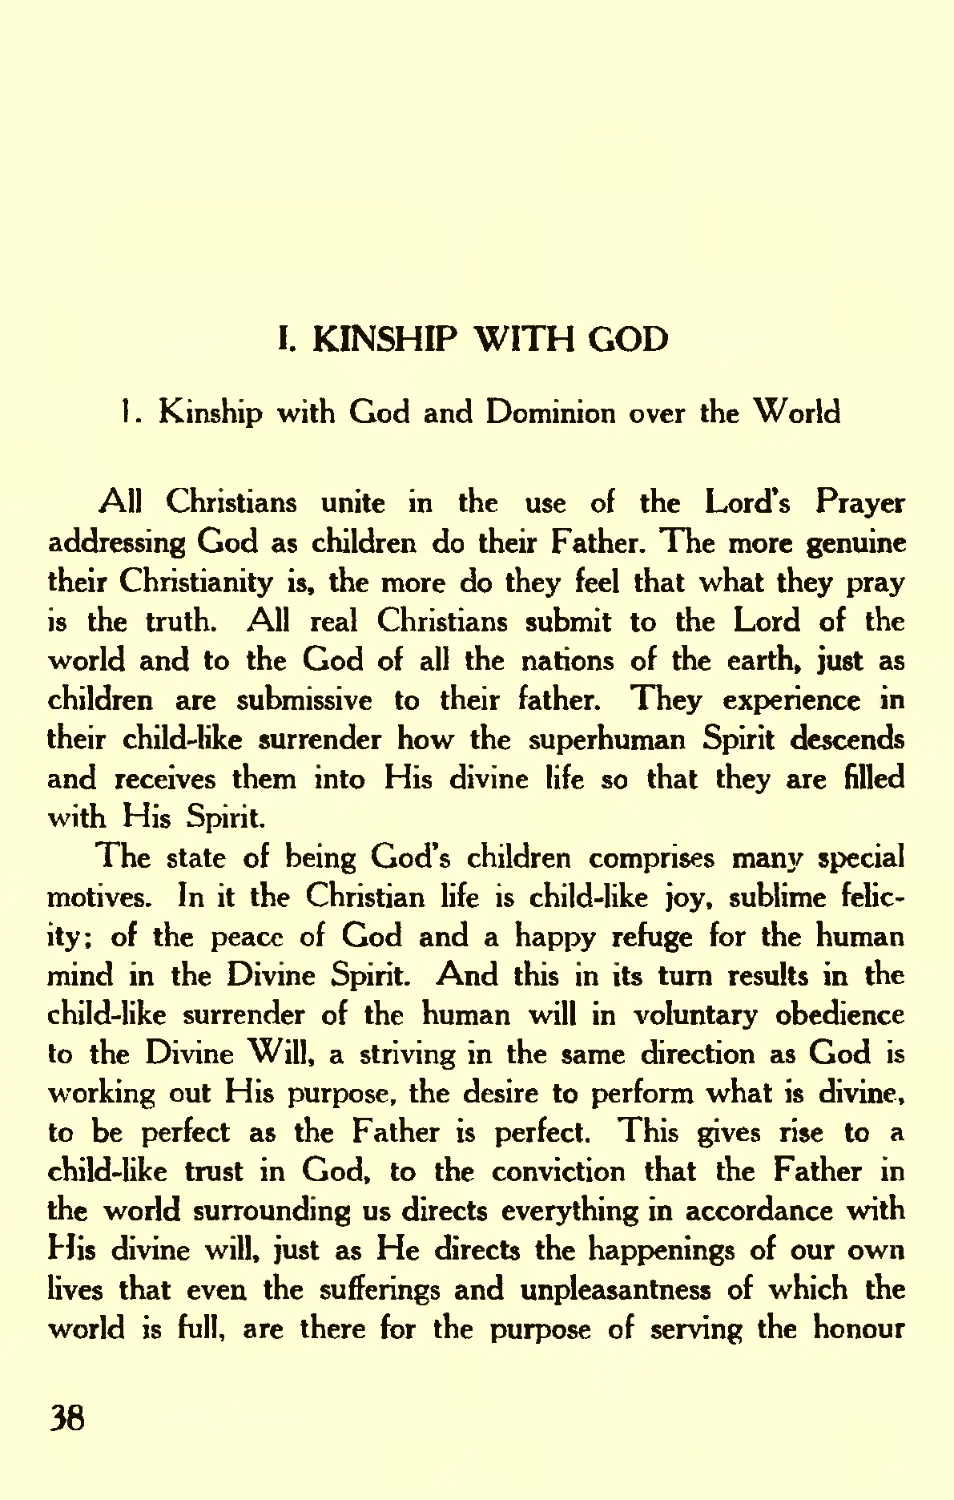 I. KINSHIP WITH GOD
1. Kinship with God and Dominion over the World